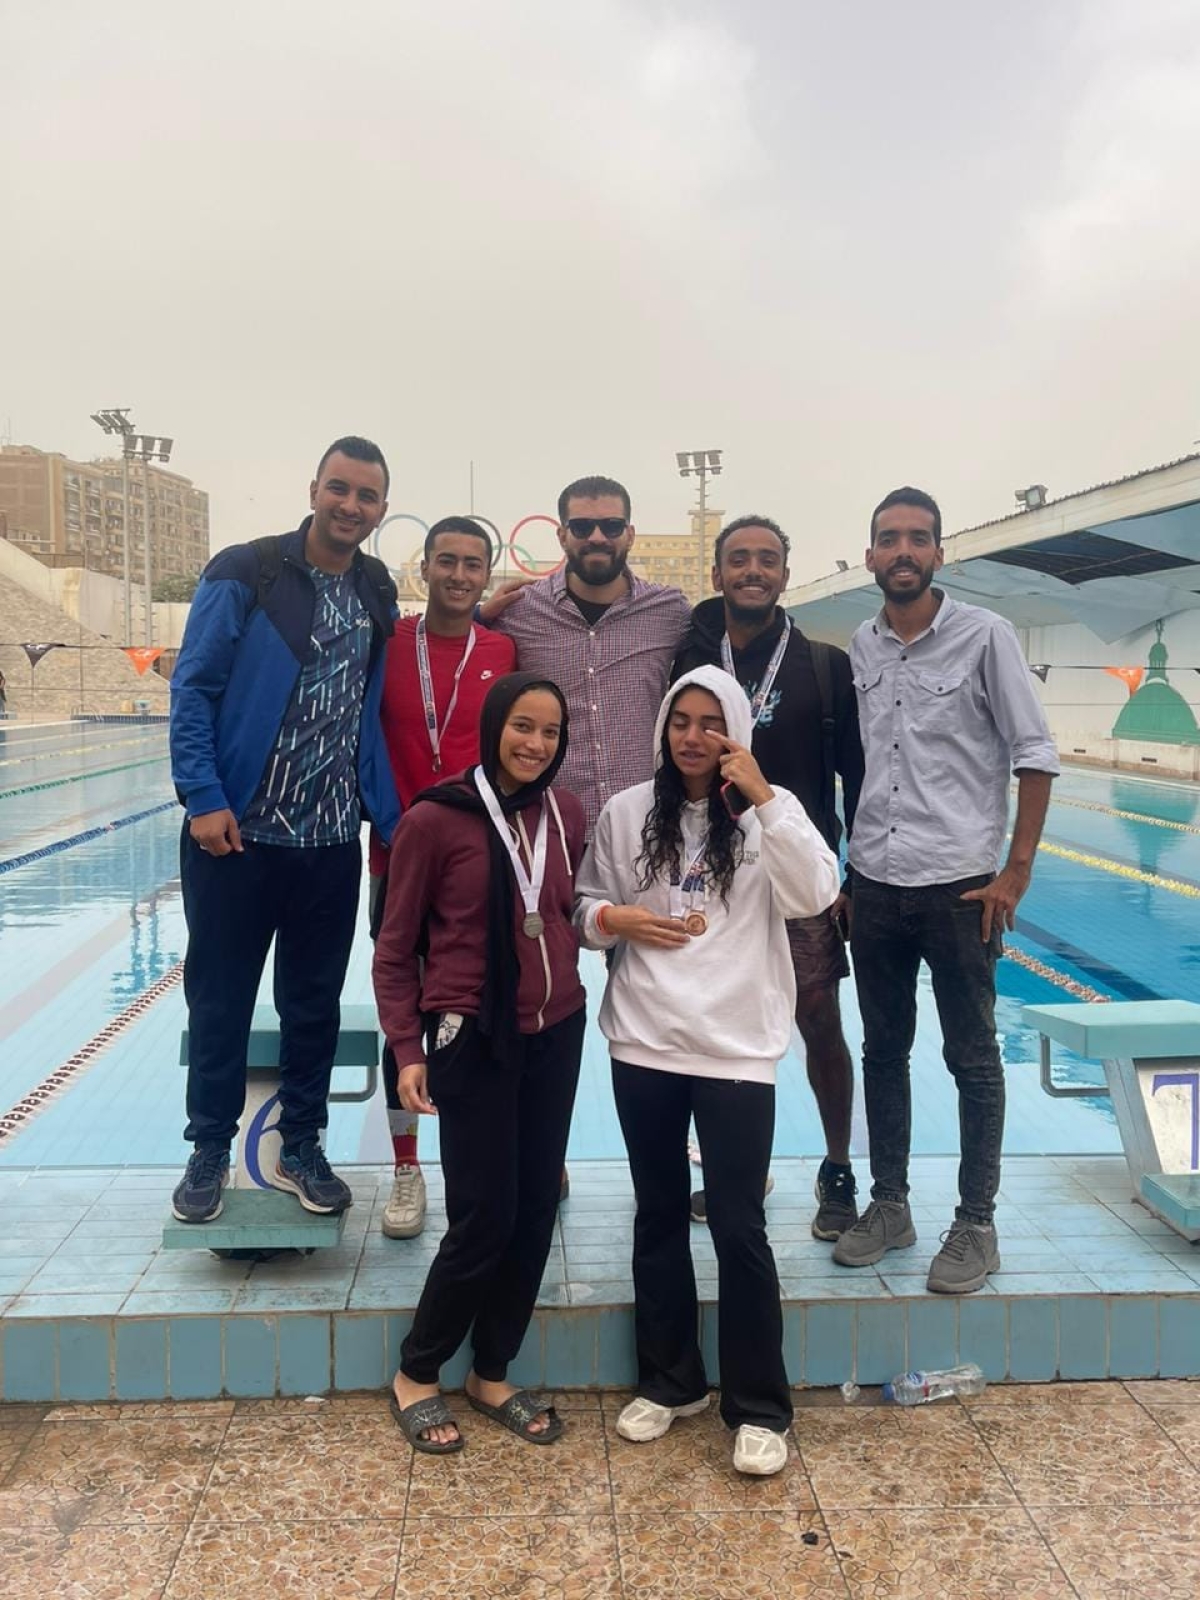 جامعة بنها تفوز بثلاث مراكز فى بطولة السباحة بالزعانف للجامعات والمعاهد العليا المصرية.